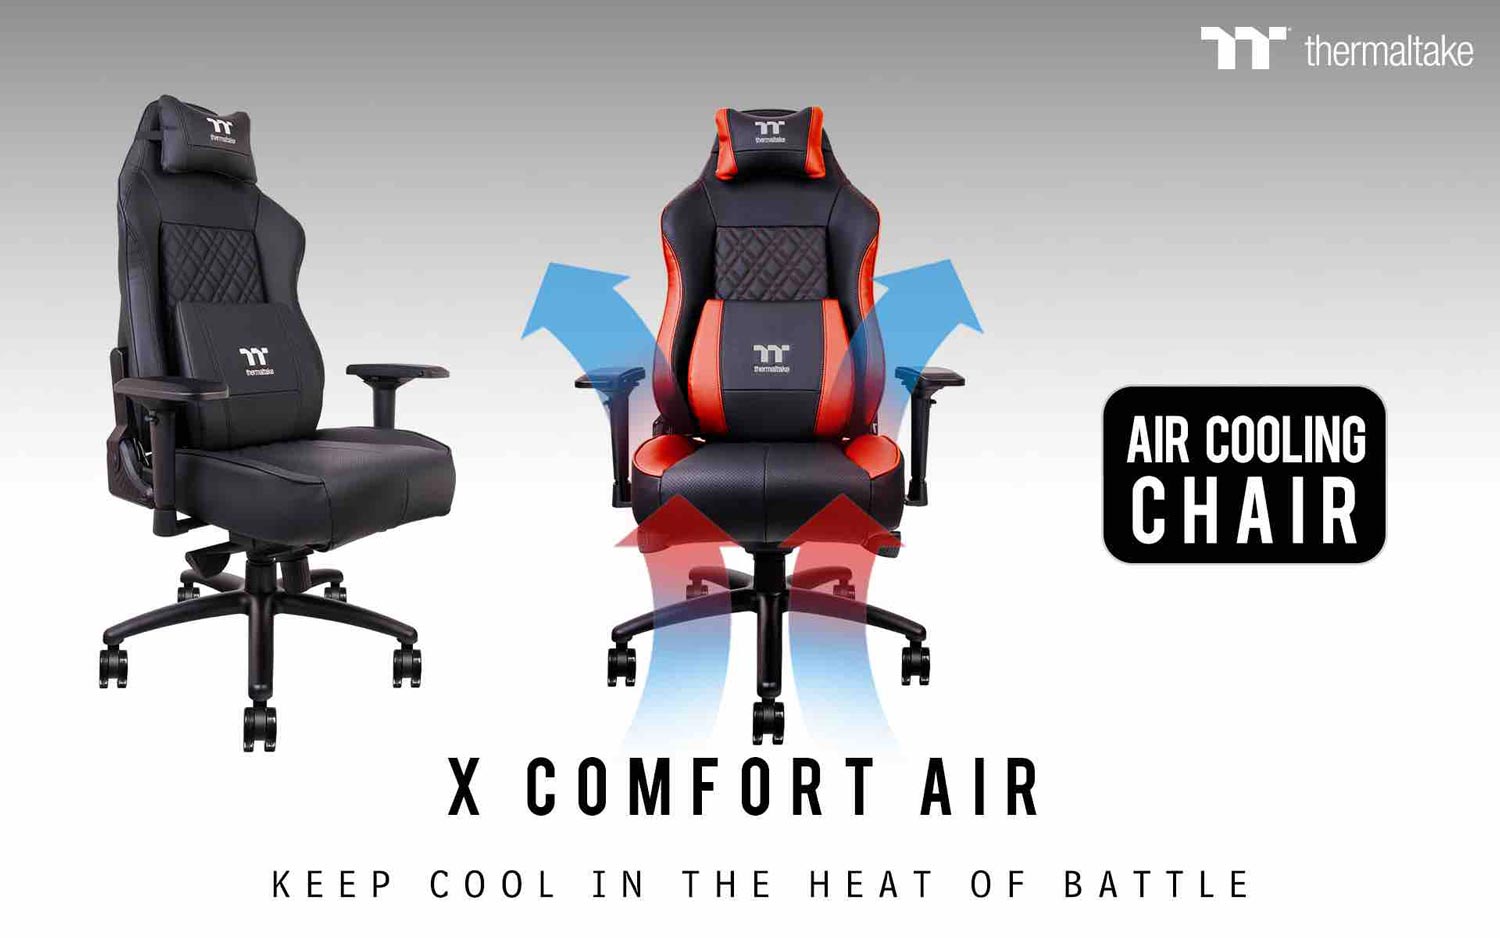 Thermaltake Melancarkan Kerusi Dengan Sistem Penyejuk X Comfort Air